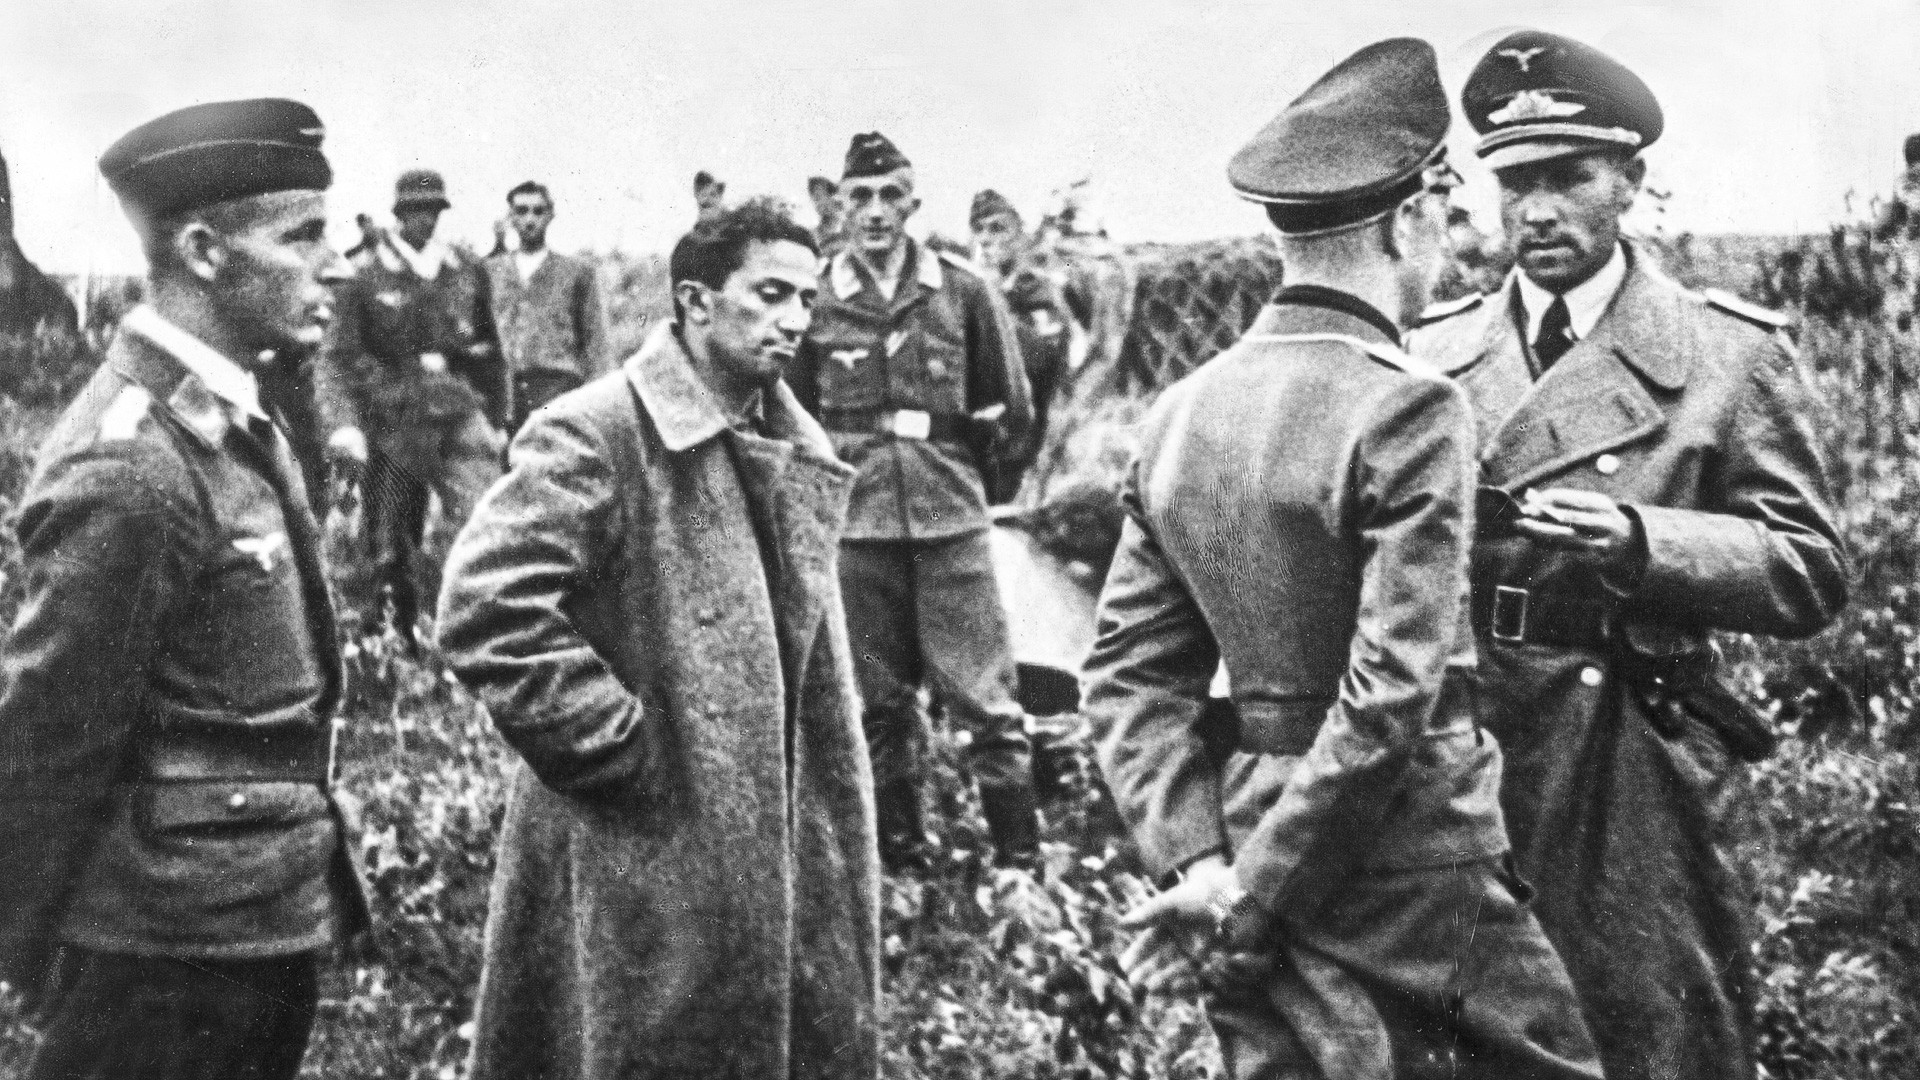 Iakov Djougachvili entouré d'officiers allemands après sa capture. En attente d'un transfert aérien vers l'arrière pour être interrogé.